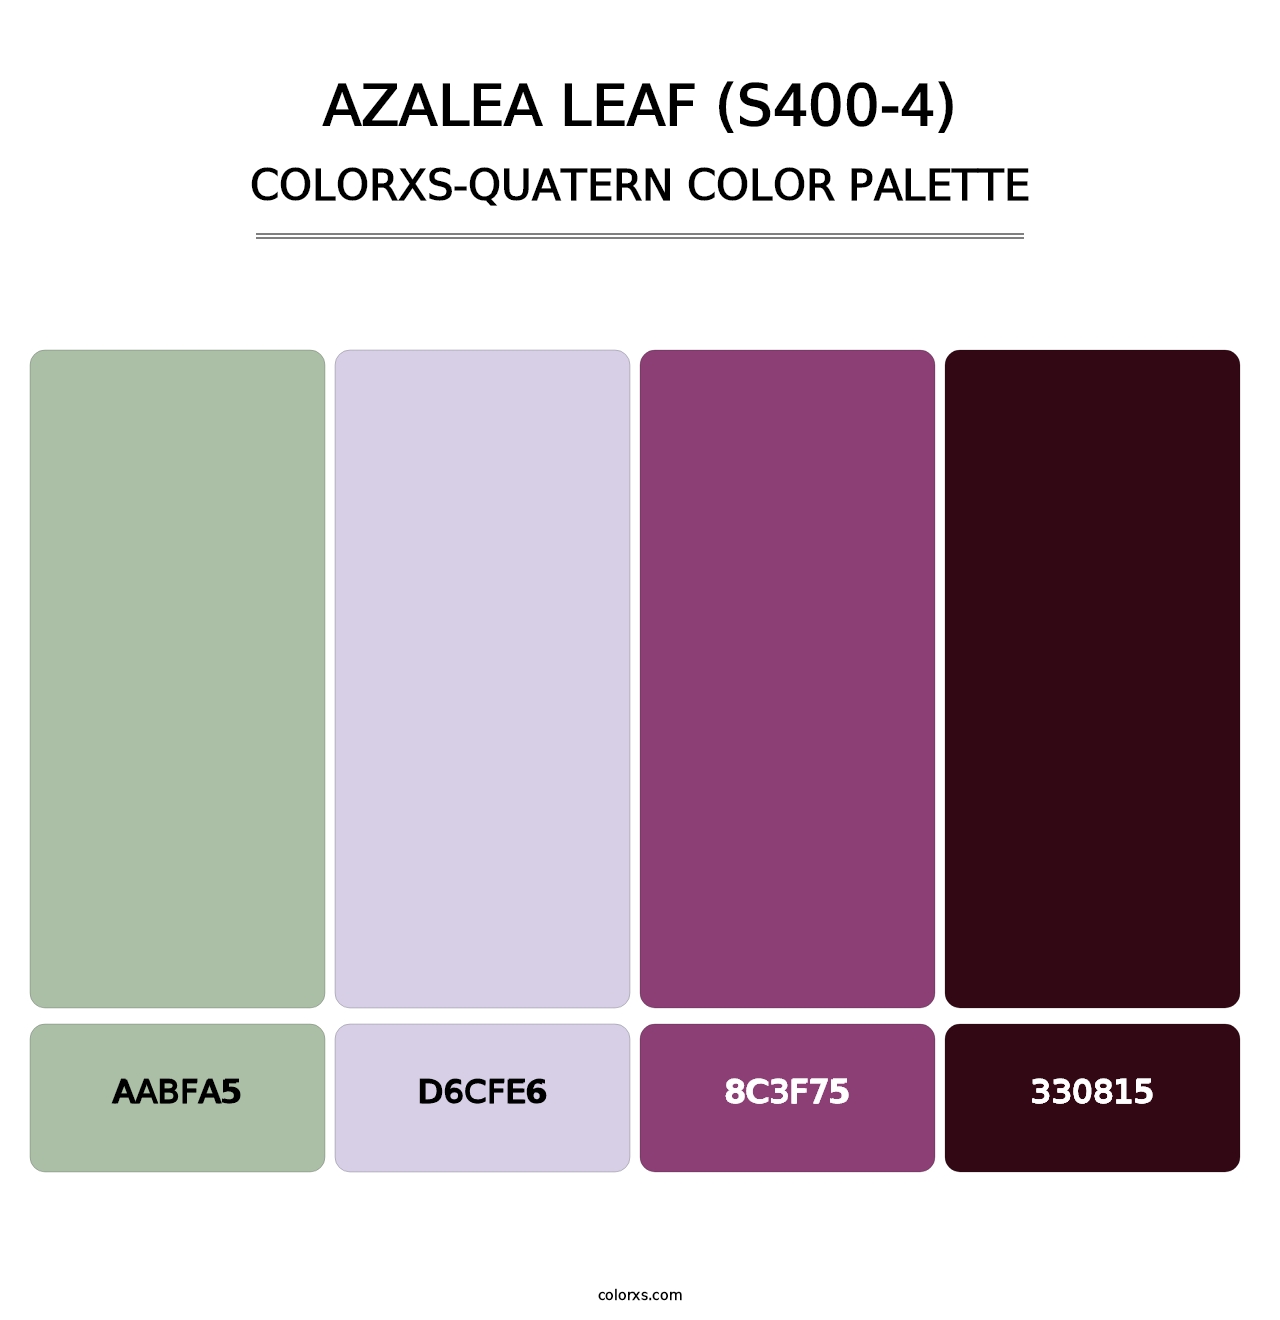 Azalea Leaf (S400-4) - Colorxs Quatern Palette